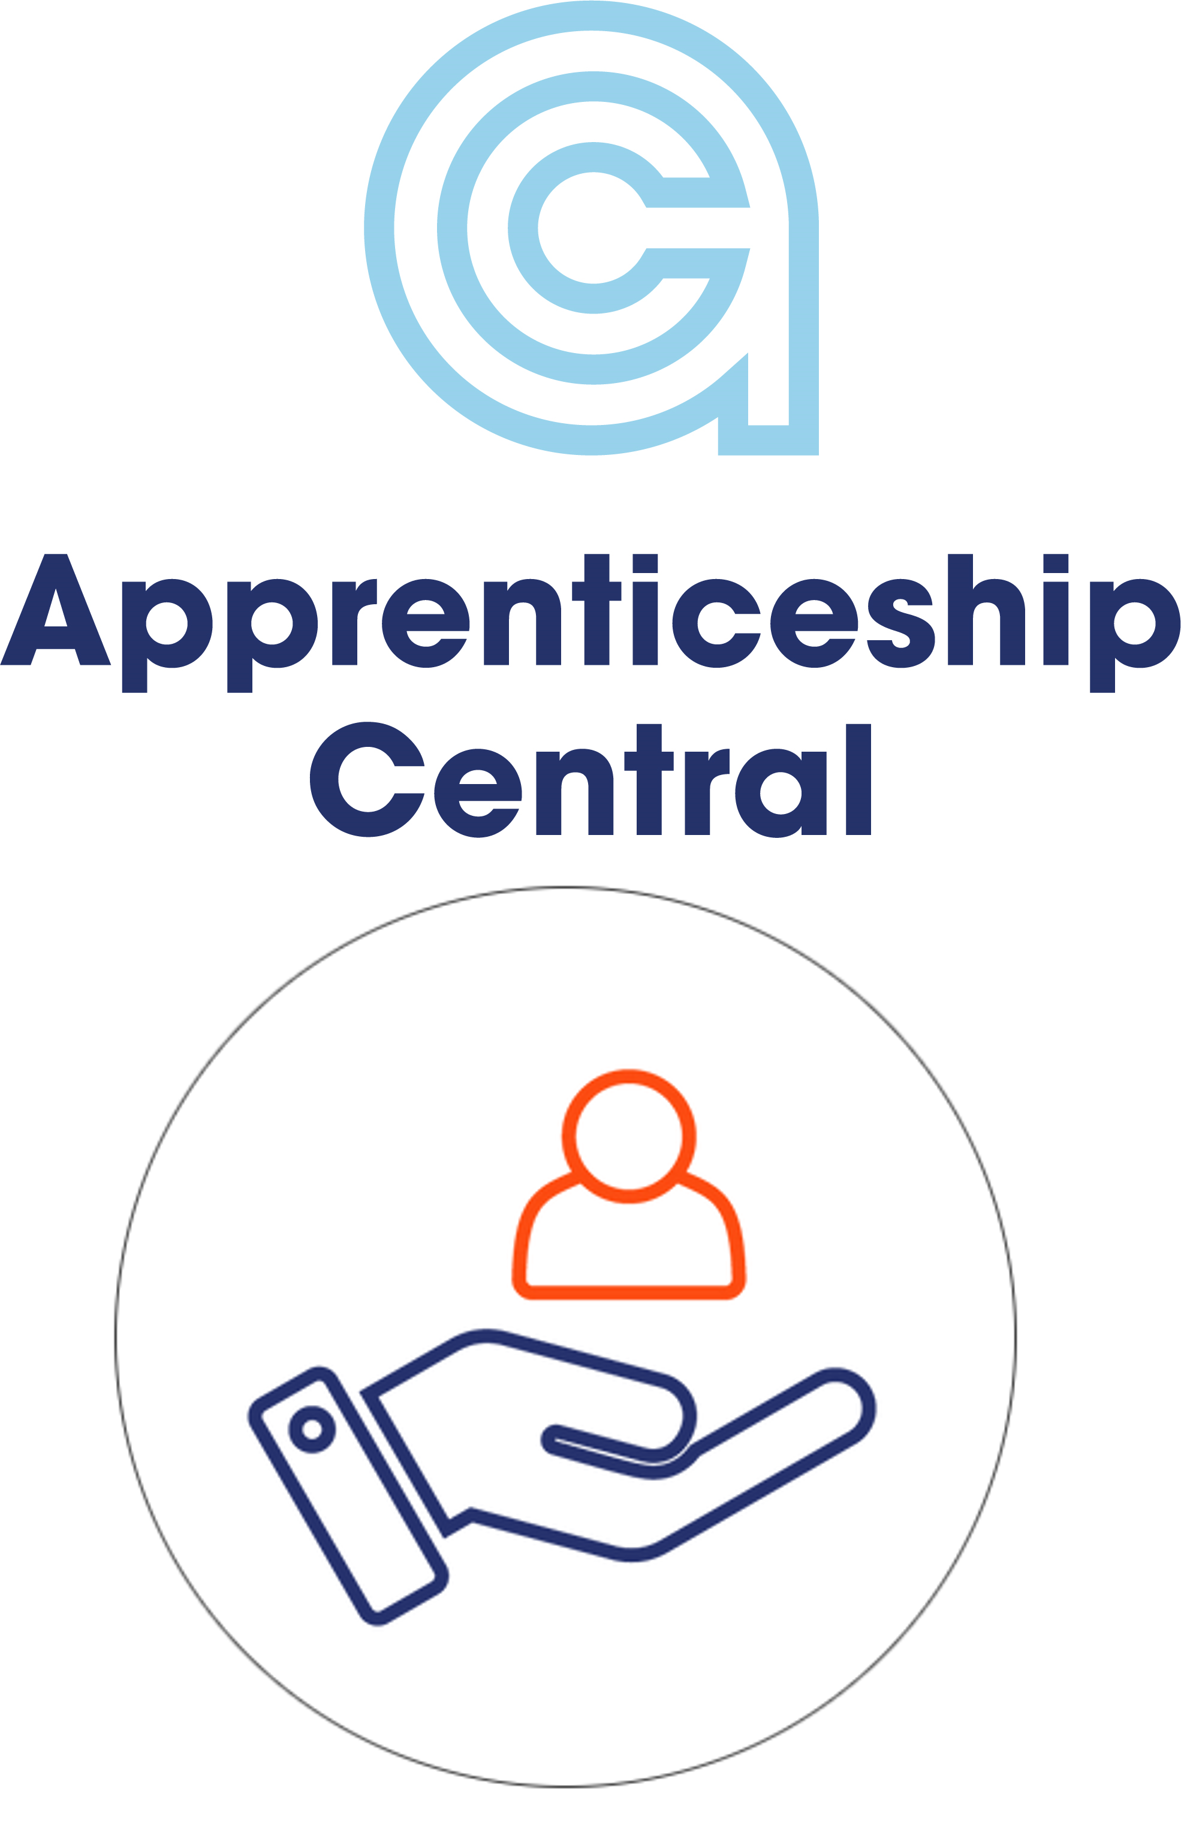 Apprenticeship Central launches unique Safeguarding programme